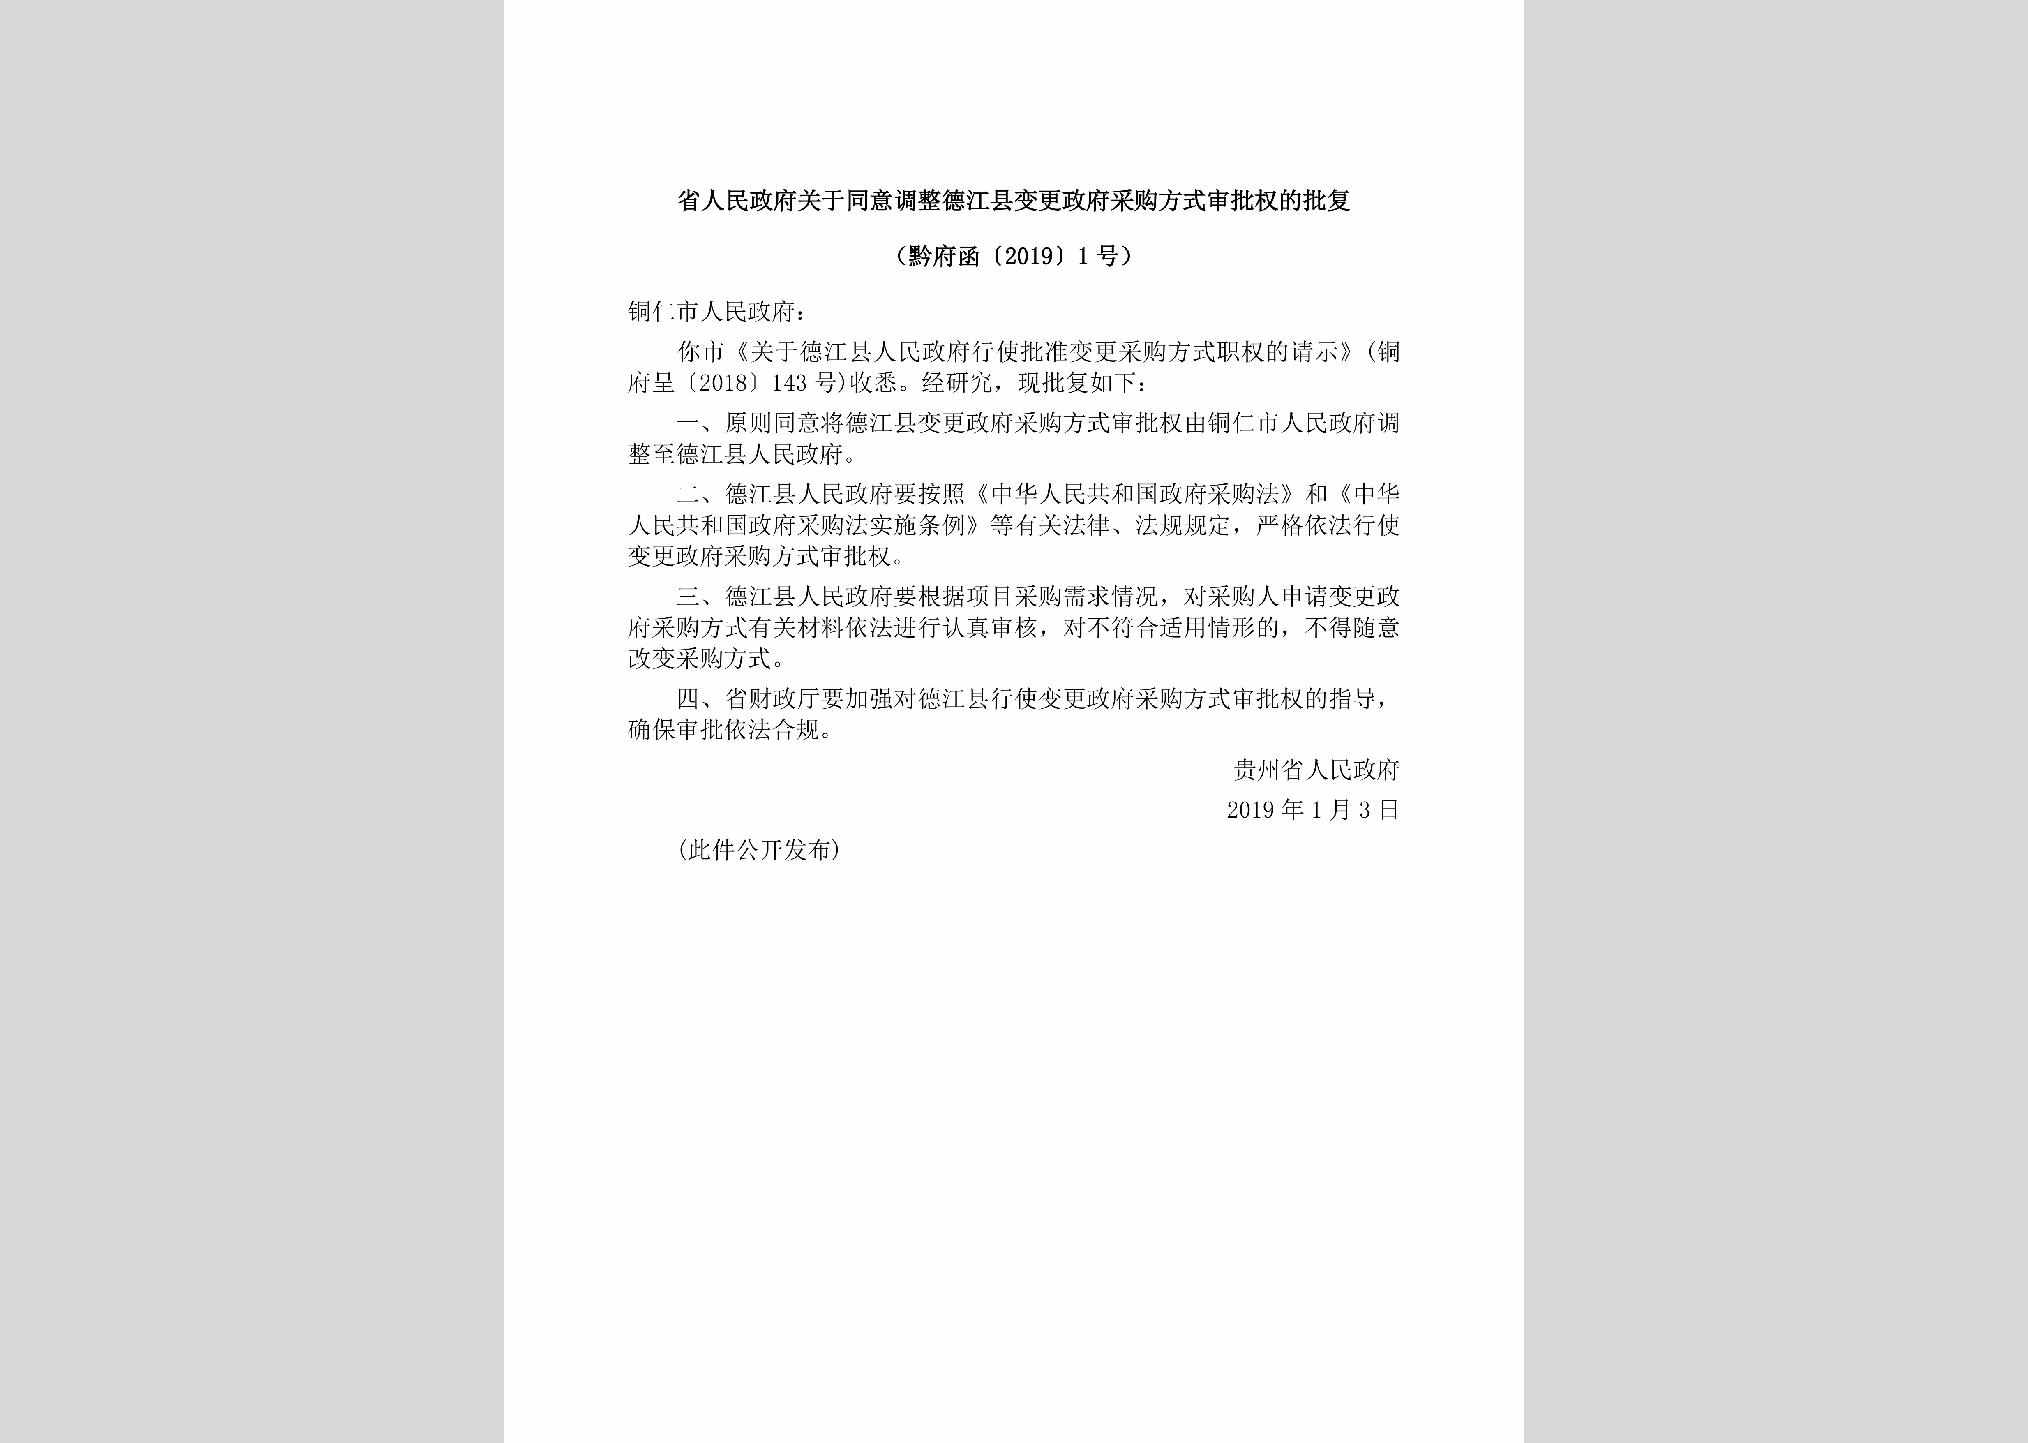 黔府函[2019]1号：省人民政府关于同意调整德江县变更政府采购方式审批权的批复